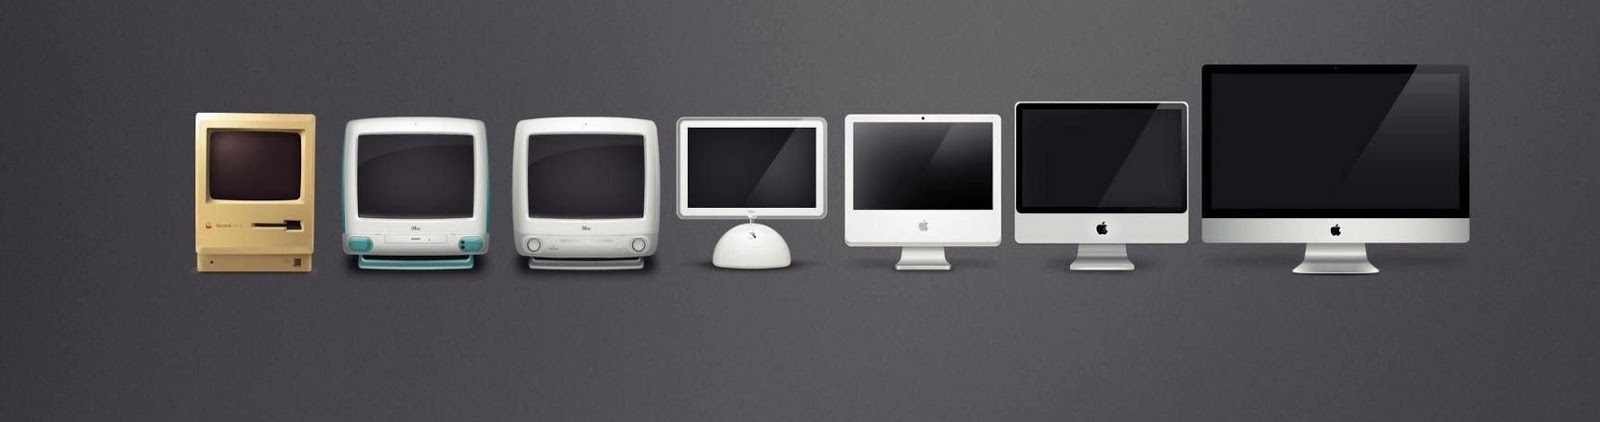 Как менялись компьютеры. Аймак 80. Монитор Mac 2 поколения. Эволюция компьютеров Apple. IMAC 1982.